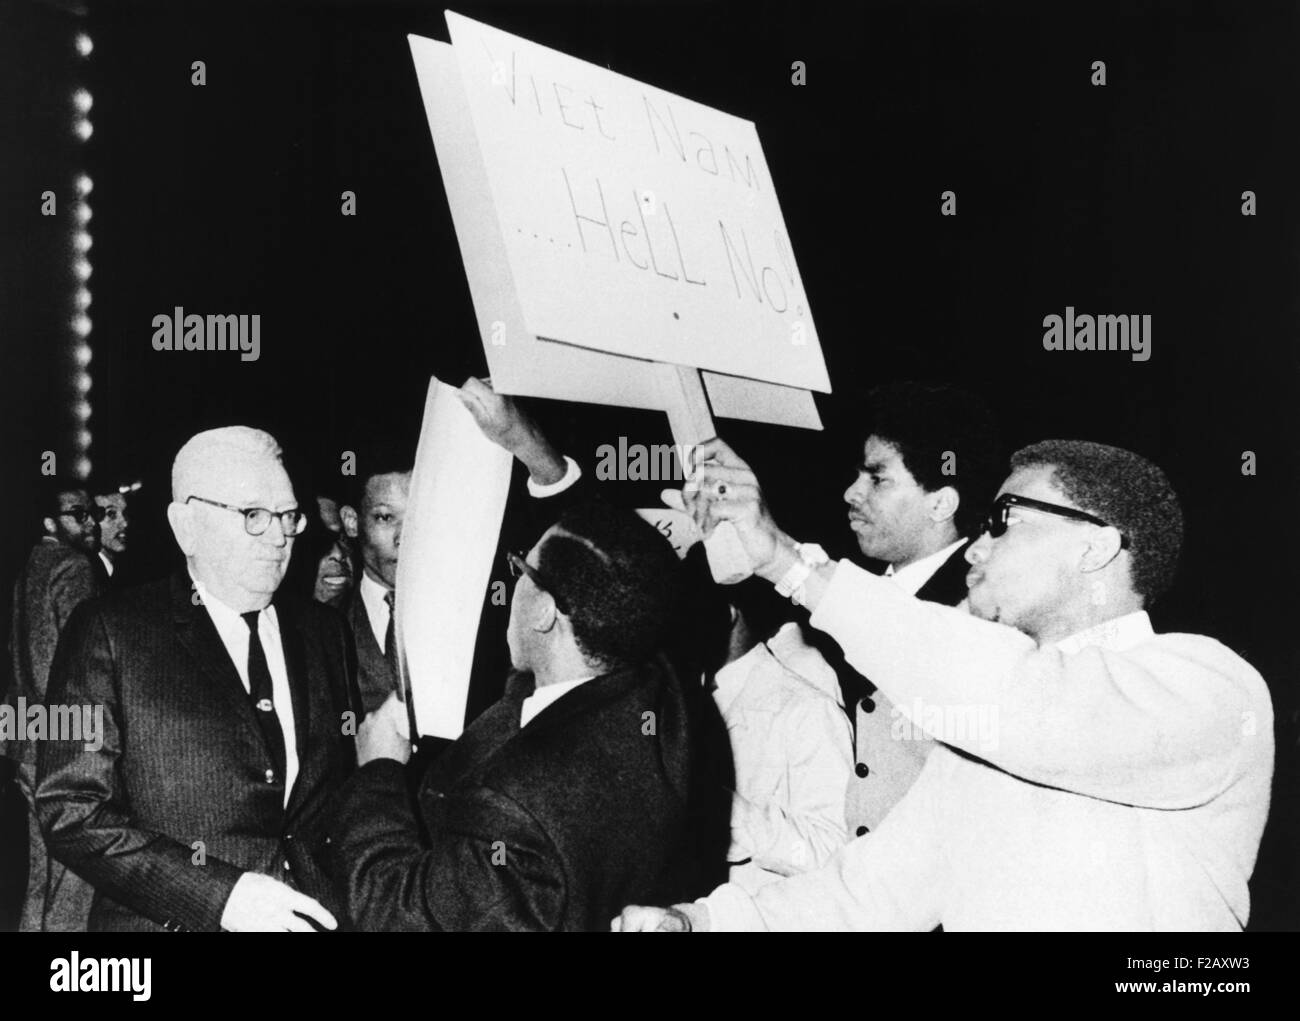 Projet de réalisateur Louis Hershey chassé de la scène par des manifestants anti-guerre à l'Université de Howard. 21 mars, 1967. 50 étudiants Noirs américains entouré le général de 73 ans Hershey forme anti-courant d'affiches. CSU (2015  9 955) Banque D'Images